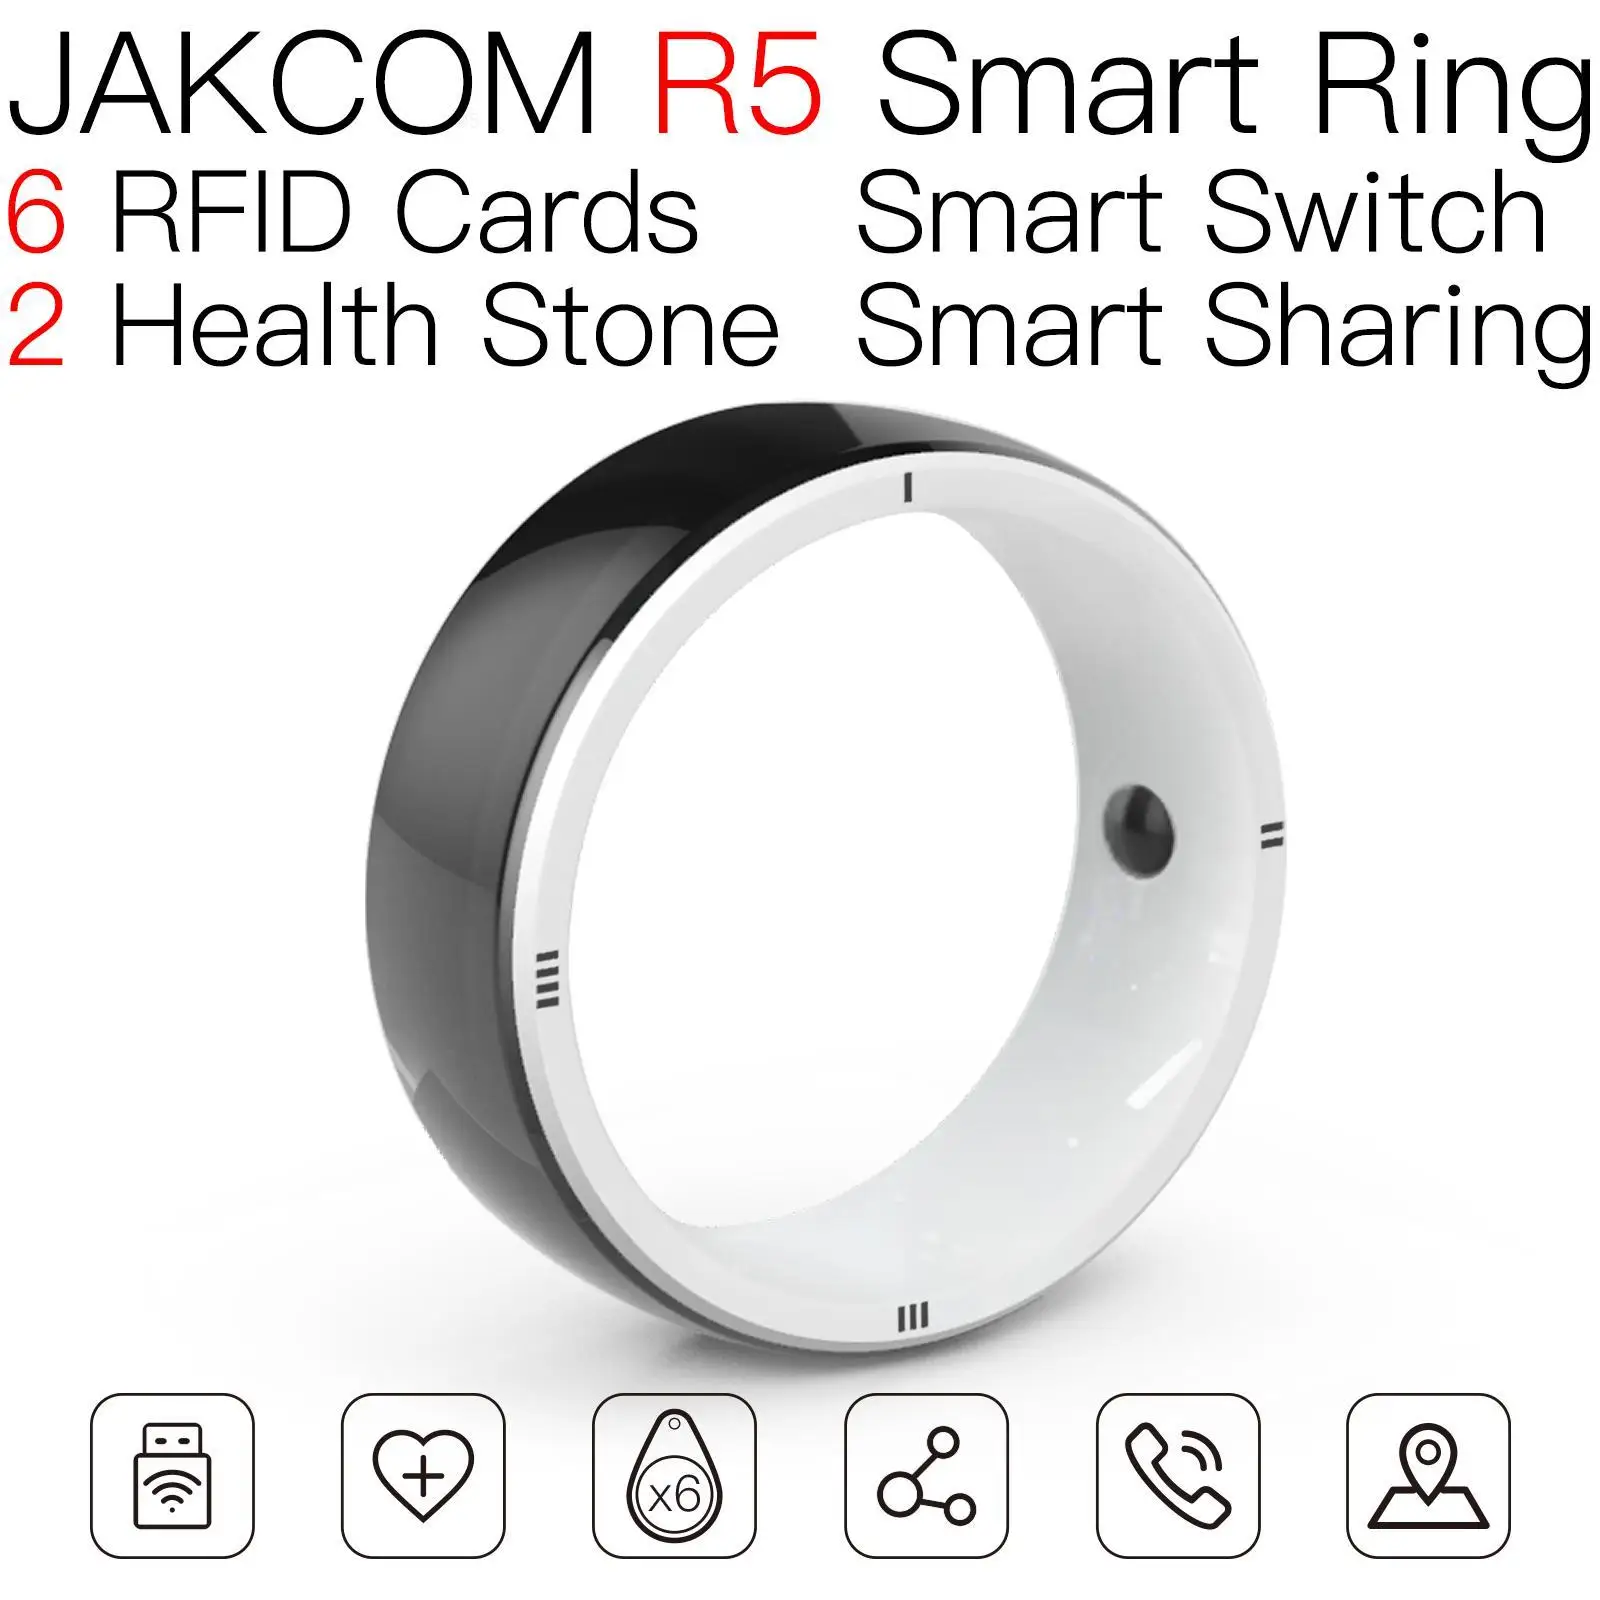 

Умное кольцо JAKCOM R5 лучше, чем кабельная стяжка, чип rfid-метки s50, карта клонирования, бирки лифта, этикетка ev1, наклейка, горячие белила